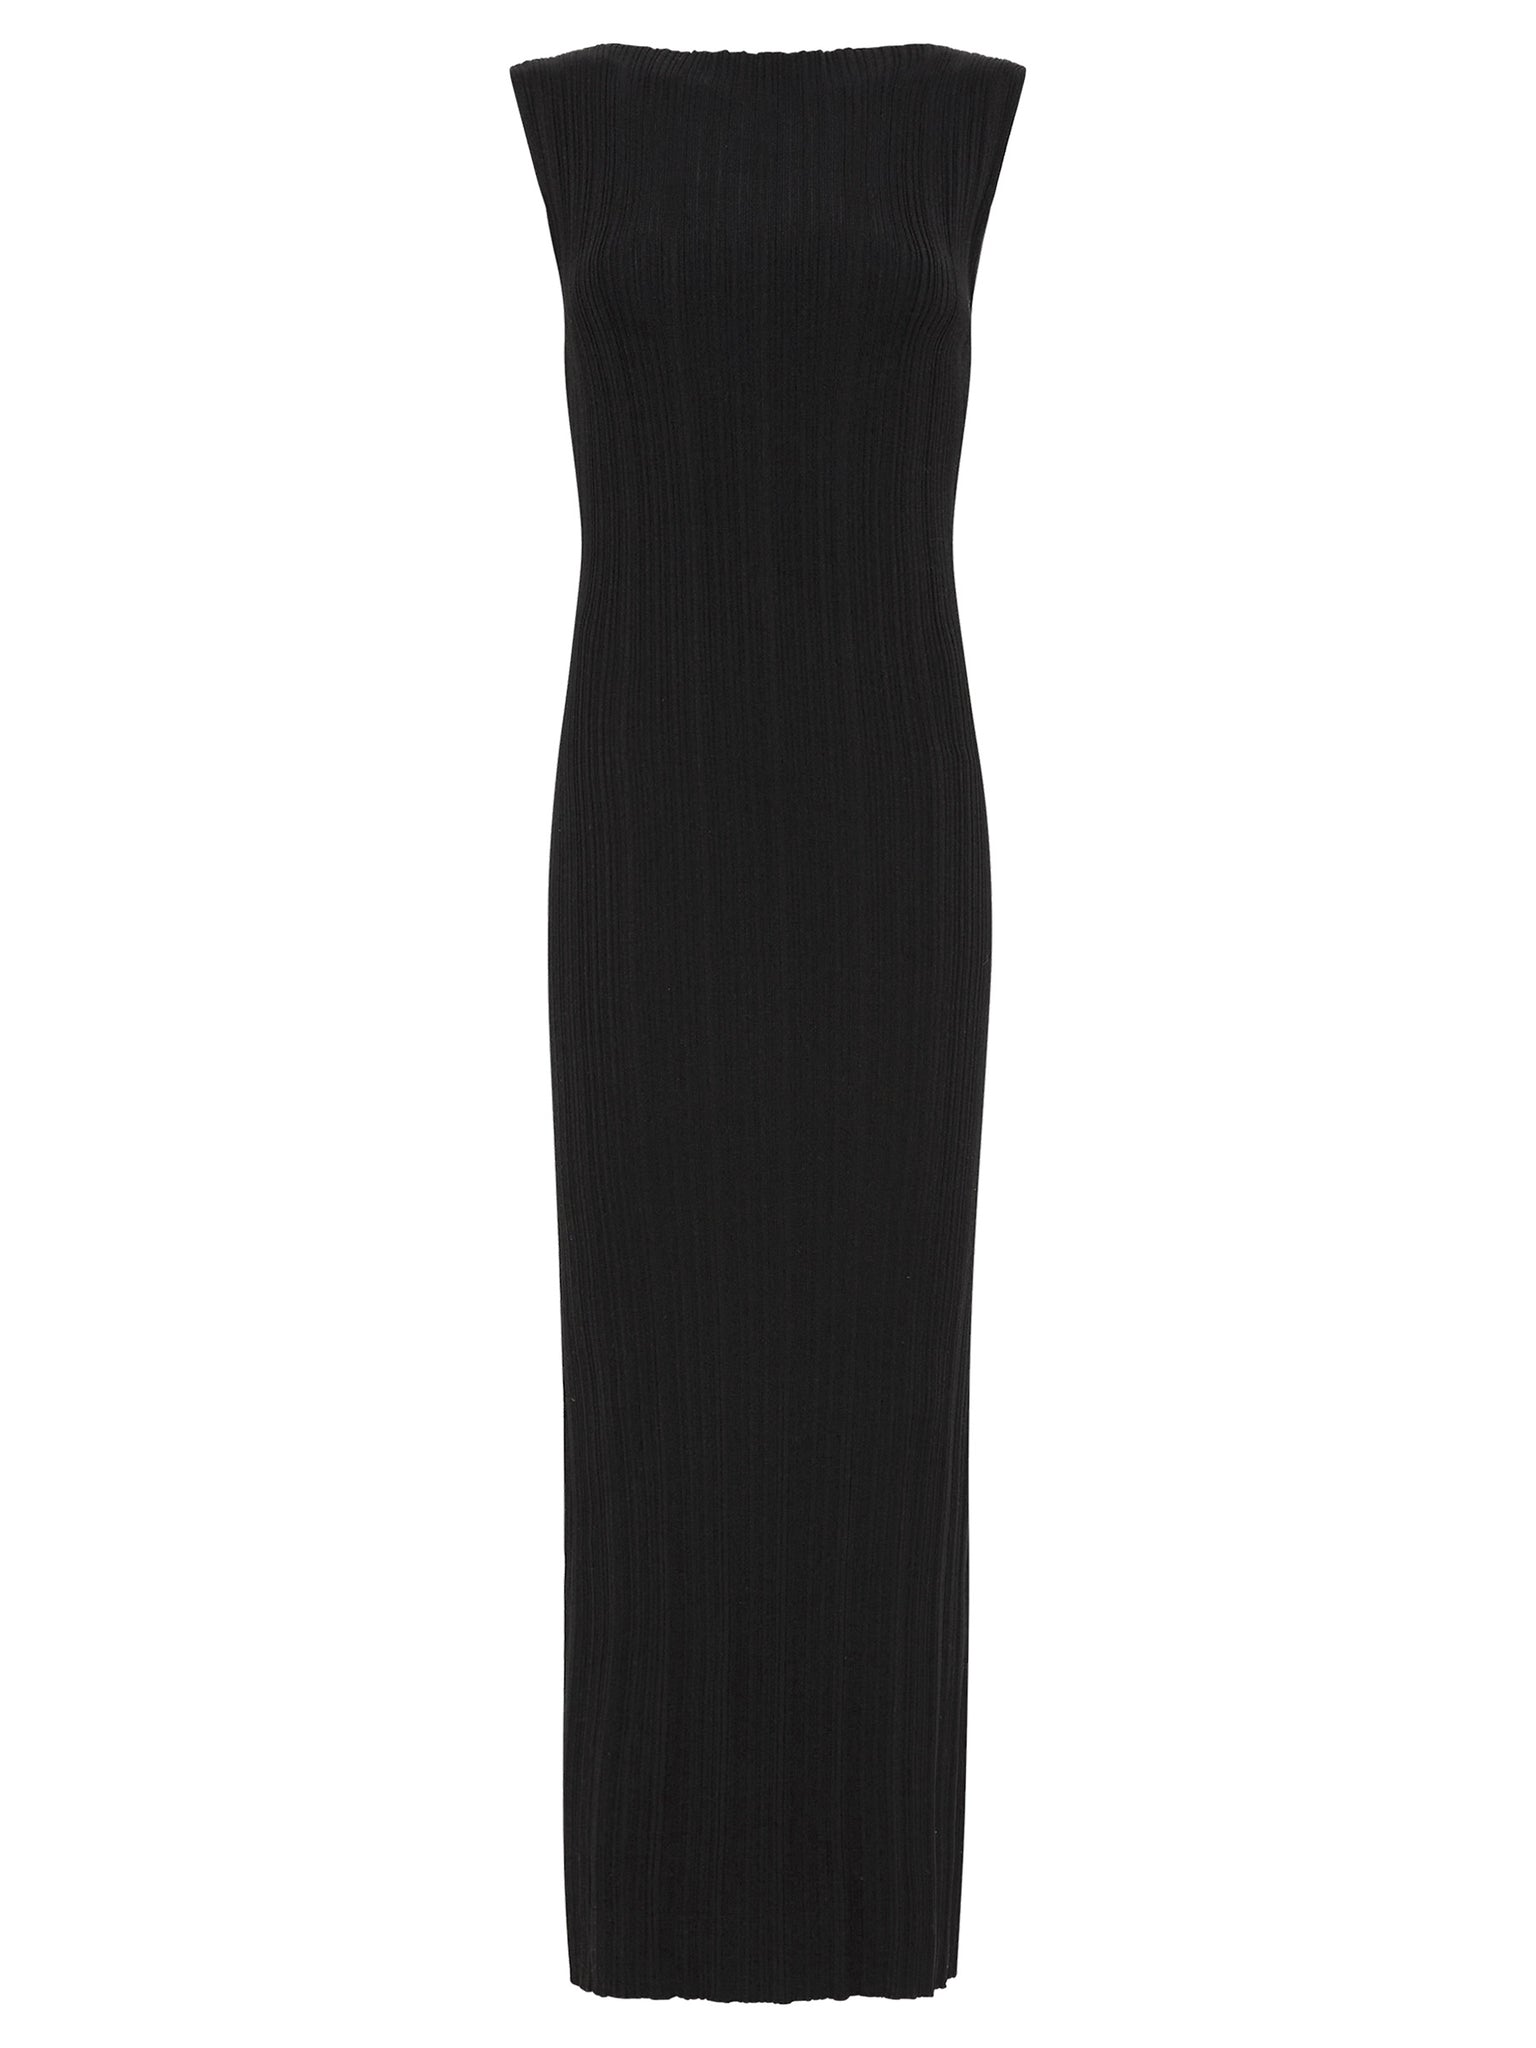 St. Agni | Black Vas Pleat Knit Dress | The UNDONE by St. Agni